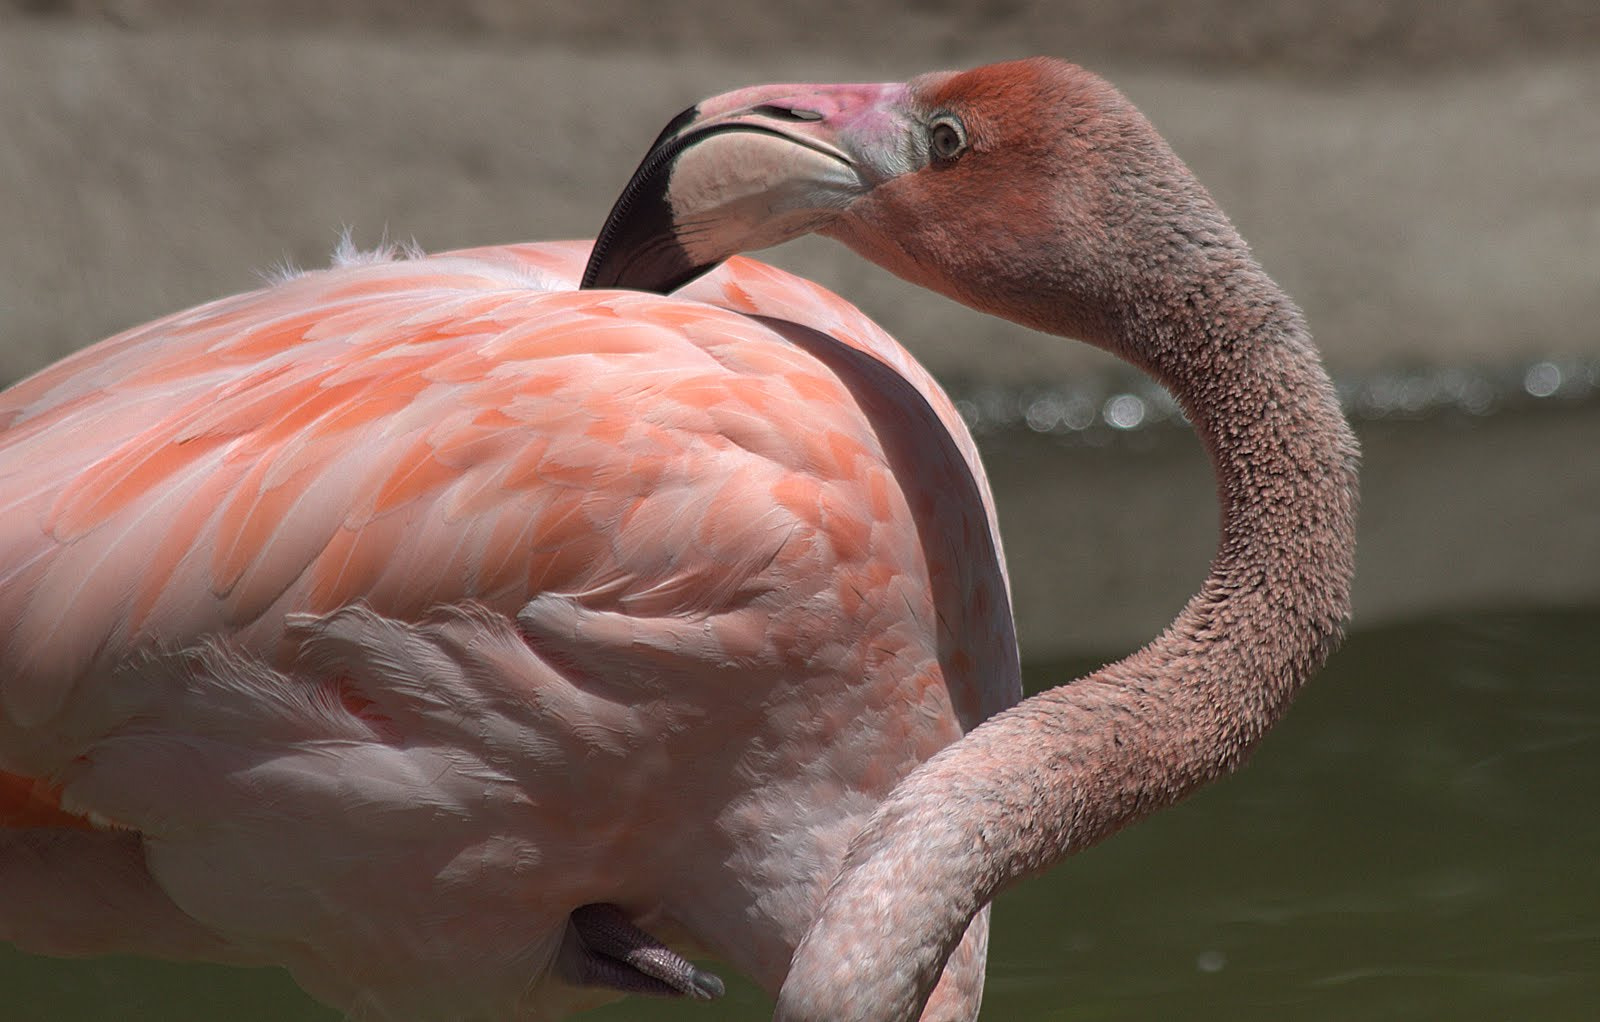 Canon EOS 7D sample photo. Flamingo photography